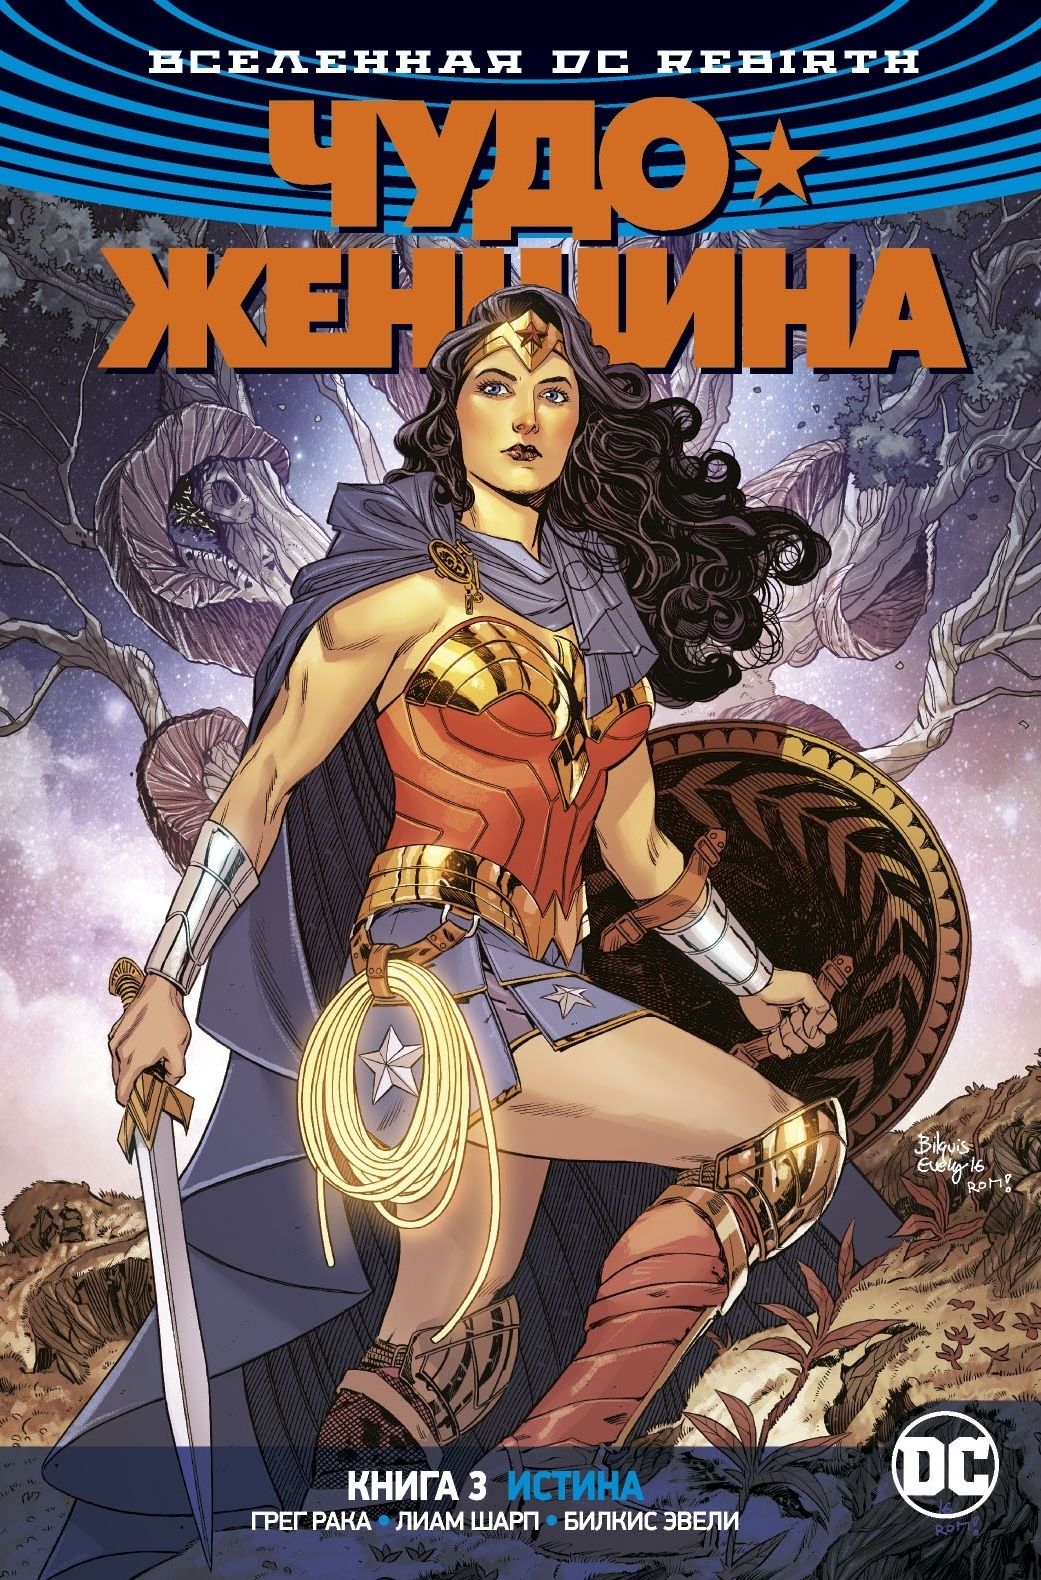 Комикс на русском языке «Вселенная DC. Rebirth. Чудо-Женщина. Книга 3. Истина»